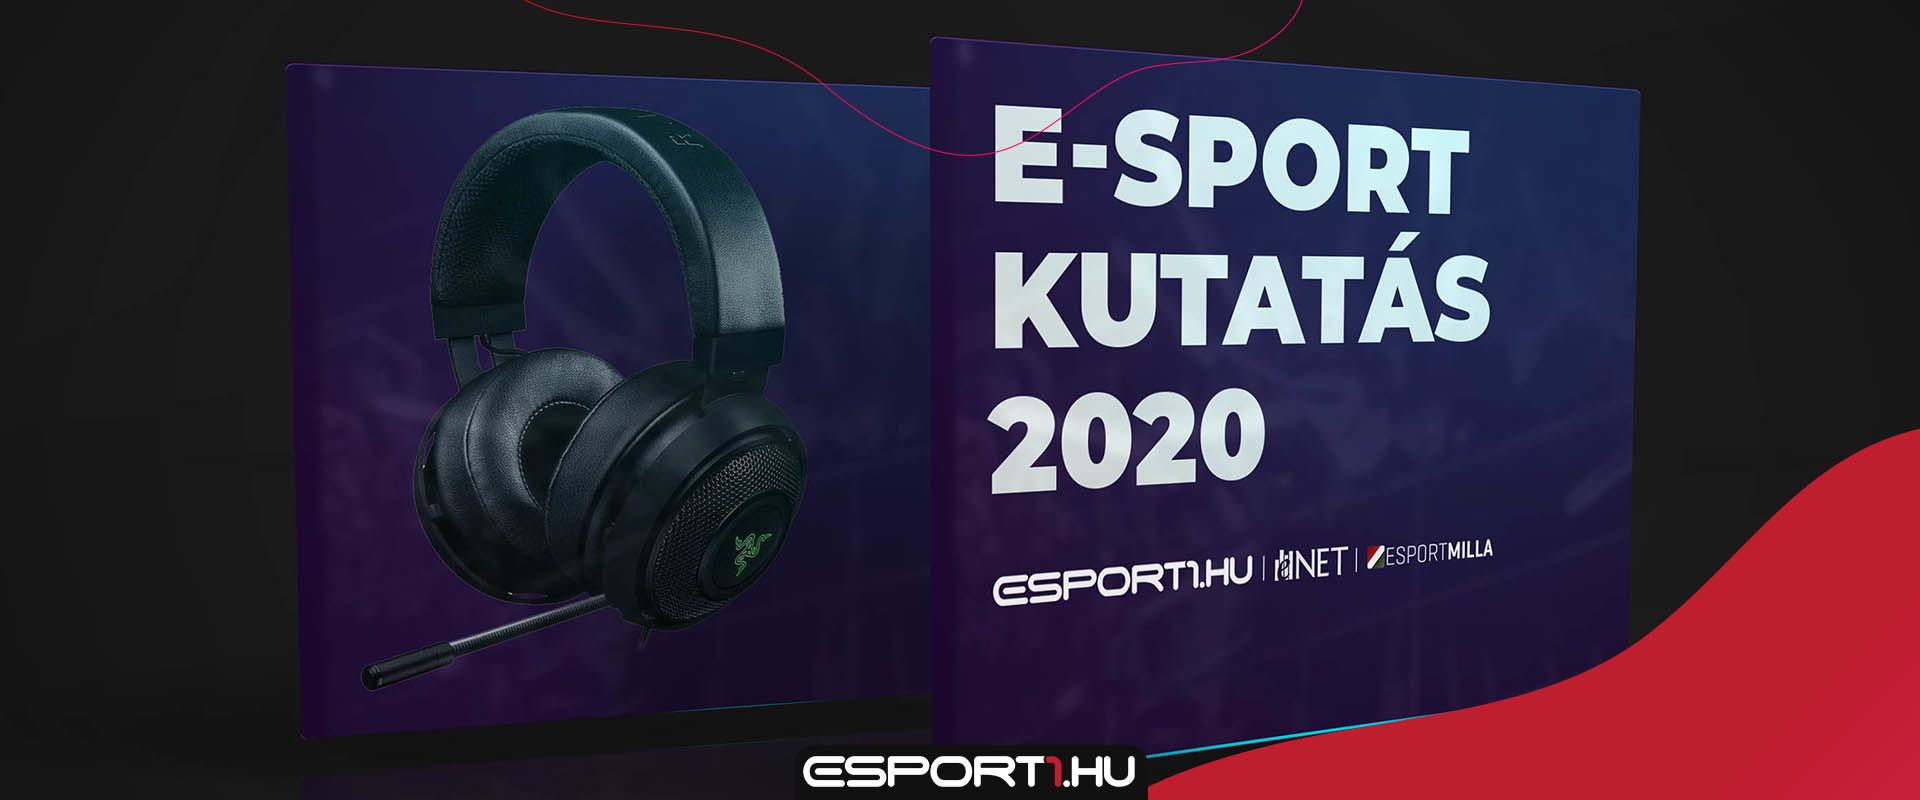 Töltsd ki a 2020-as Magyar E-sport Kérdőívet, és nyerj egy értékes fejhallgatót!